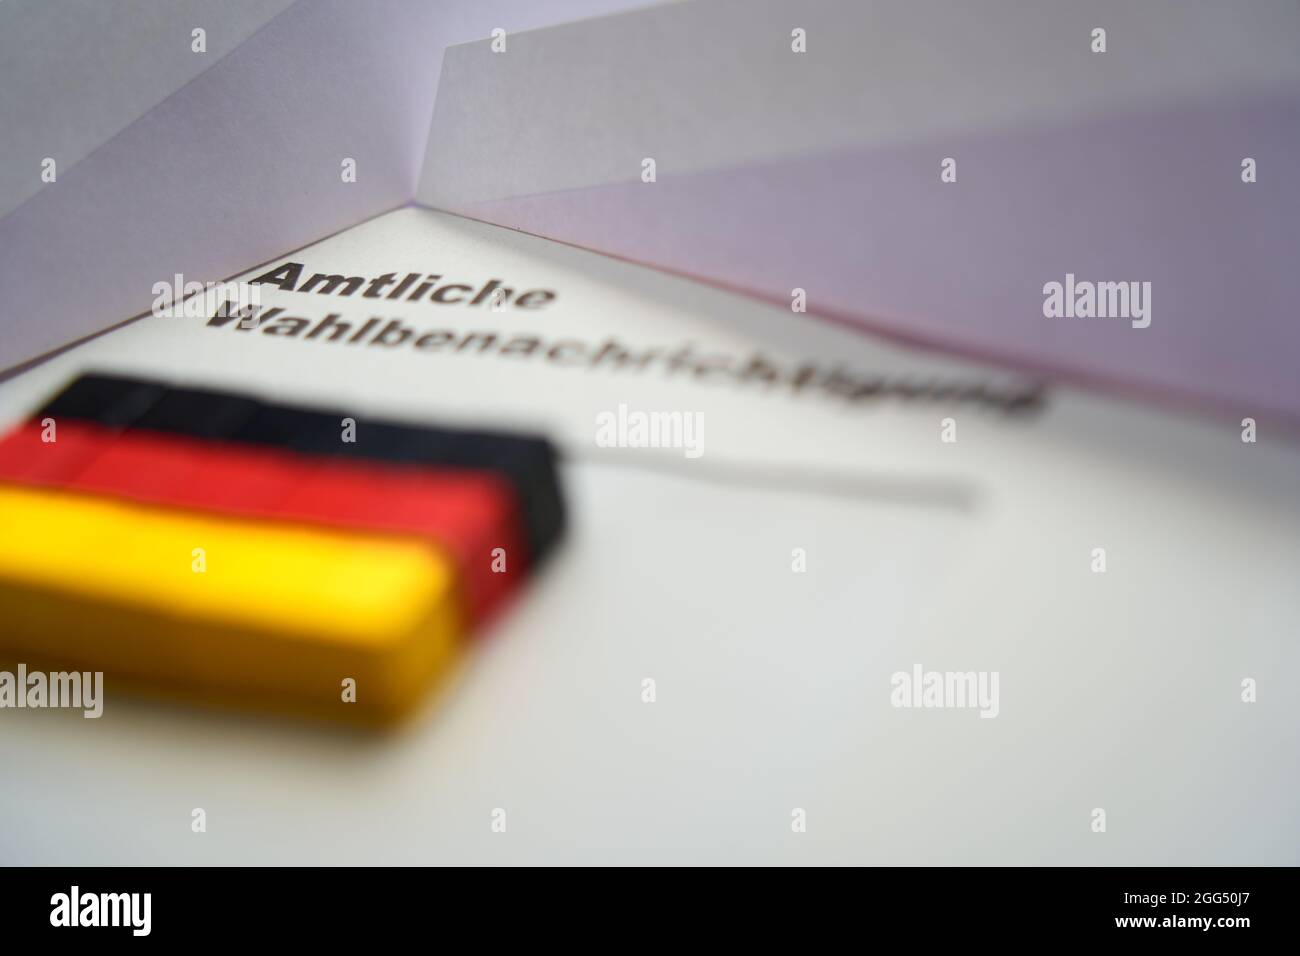 Lettere nere su busta bianca: Notifica ufficiale delle elezioni (in tedesco: Amtliche Wahlbenachrichtigung). Dadi in legno a forma di bandiera nazionale tedesca Foto Stock